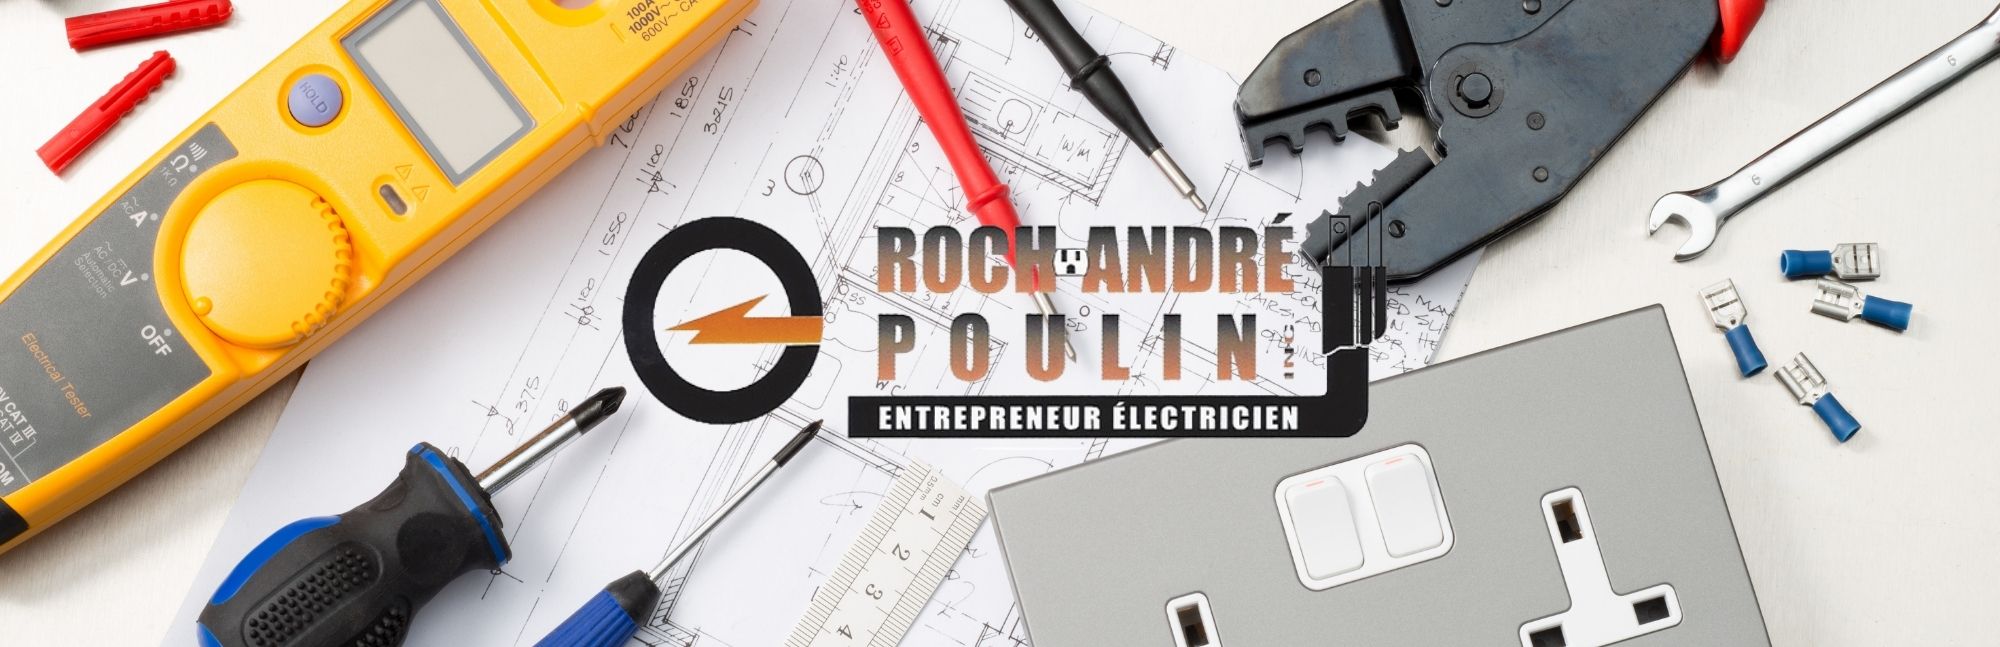 Roch André Poulin entrepreneur électricien